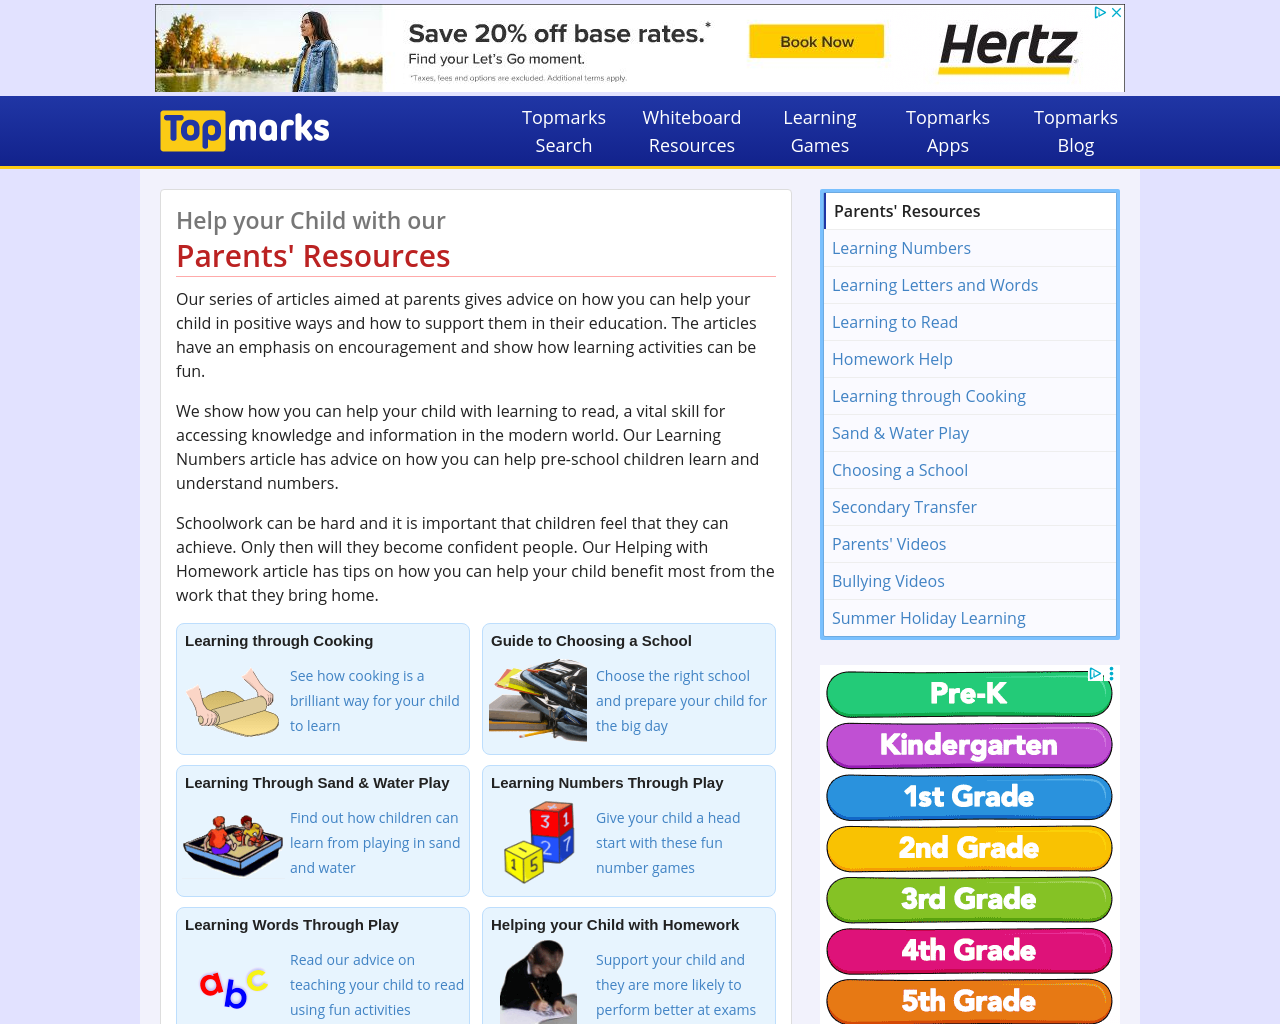 Parents' Resources